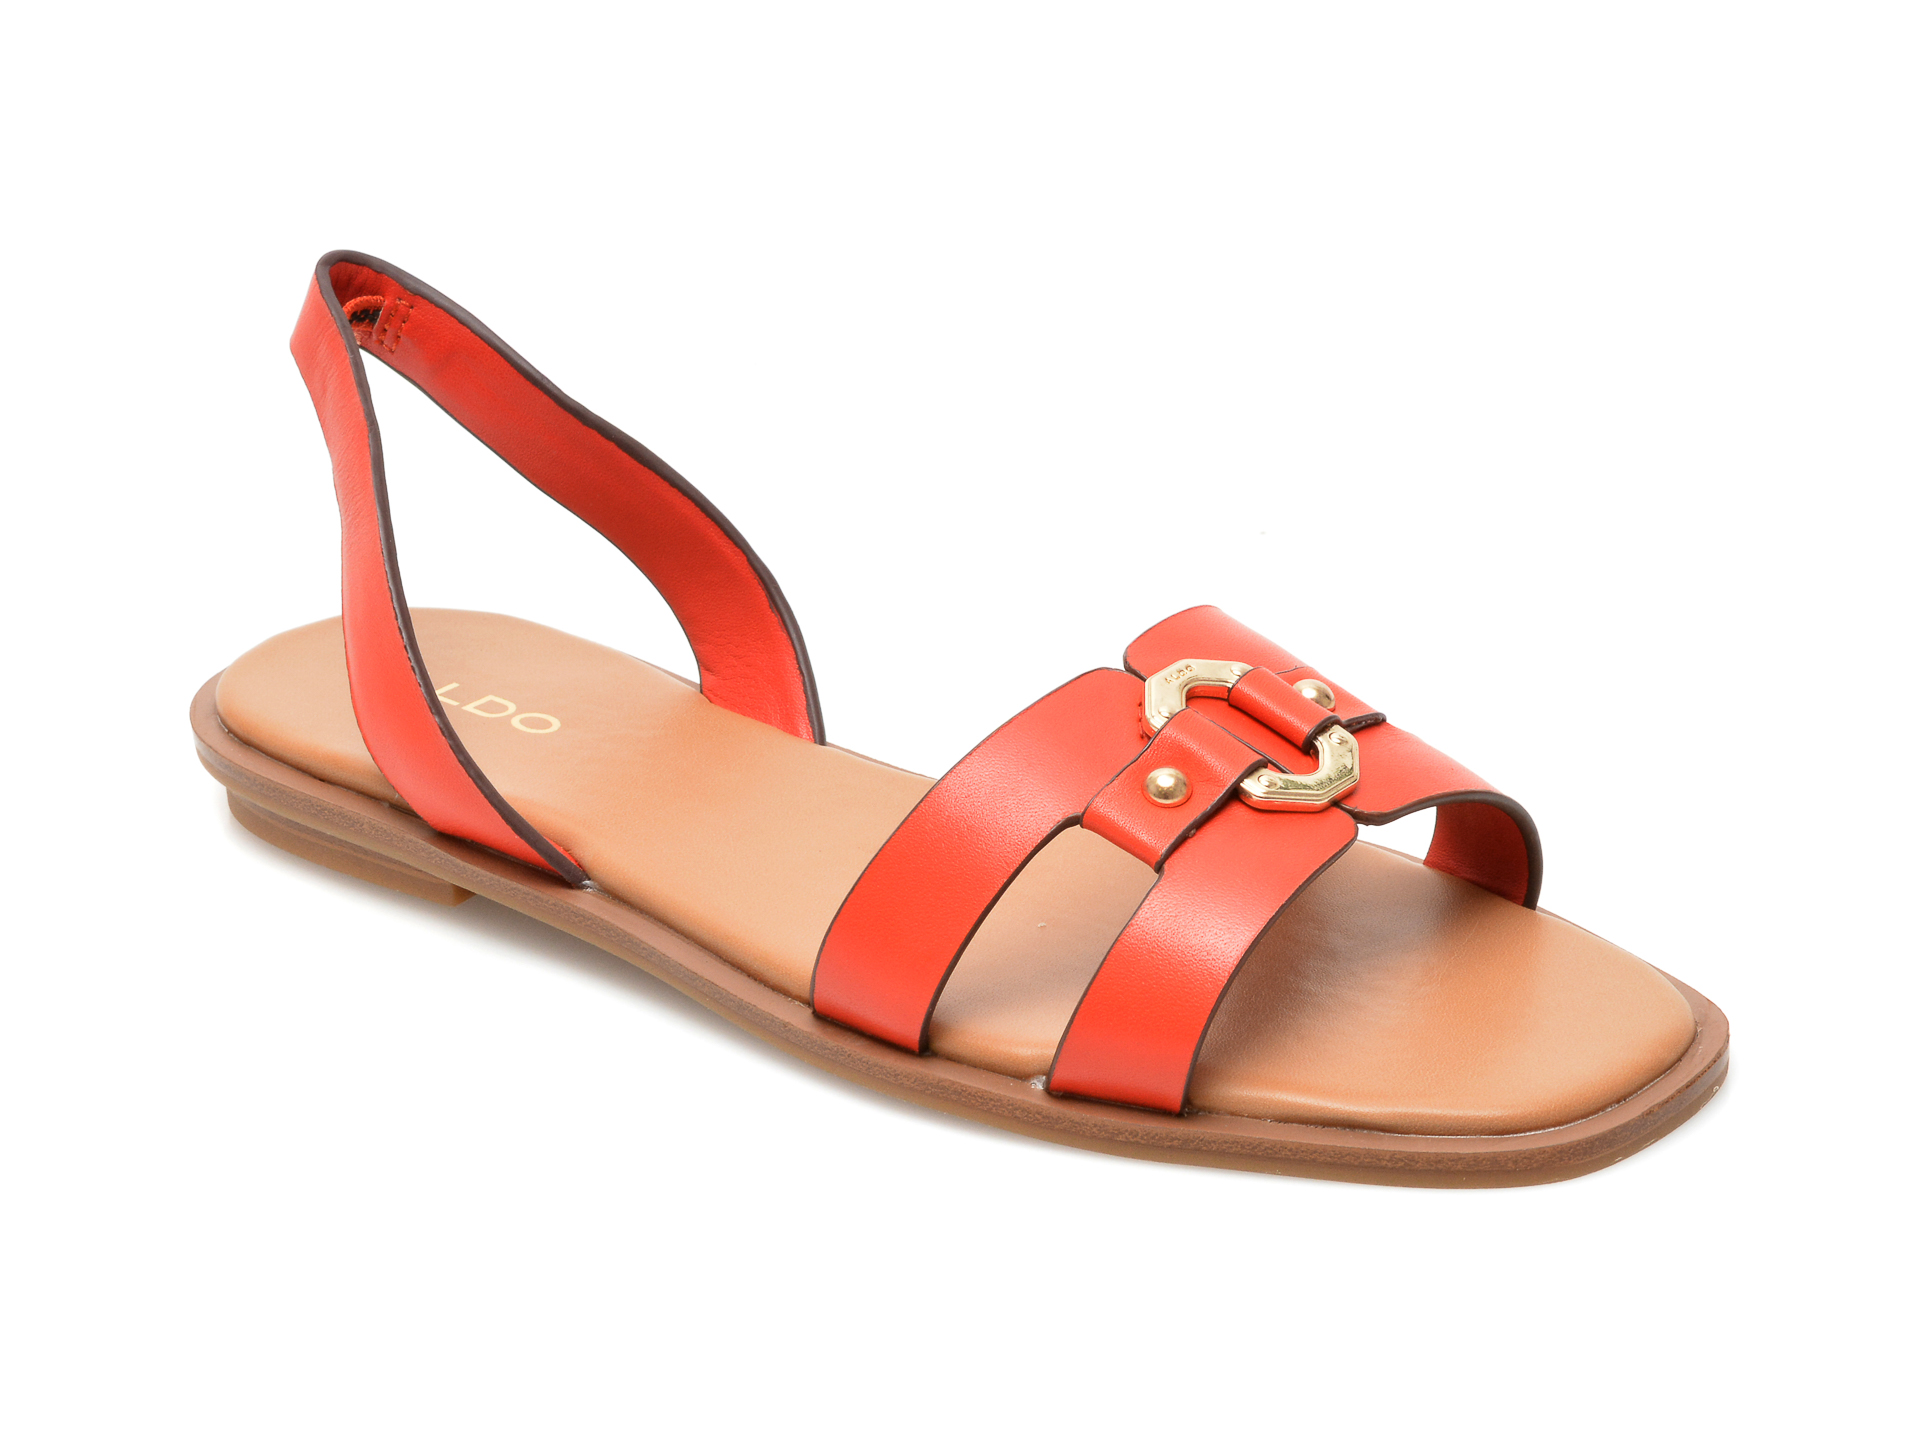 Sandale ALDO portocalii, 13252364, din piele naturala Aldo